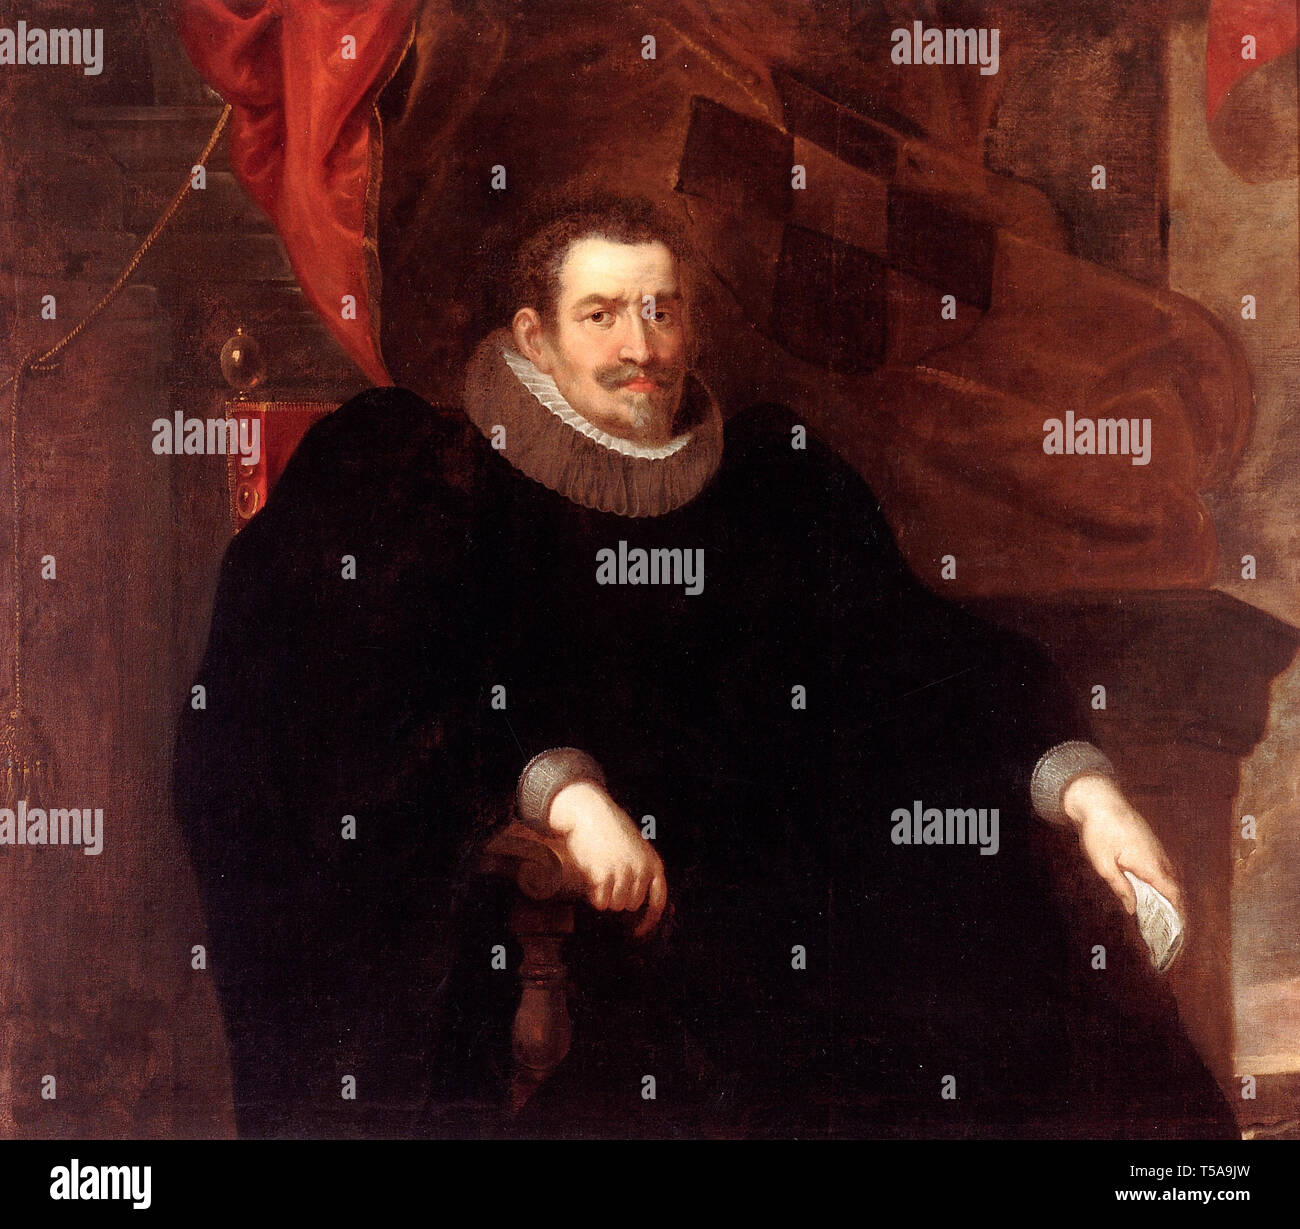 Rubens ( 1558-1634 ) - Portrait of Giulio Pallavicini - literary man Stock Photo